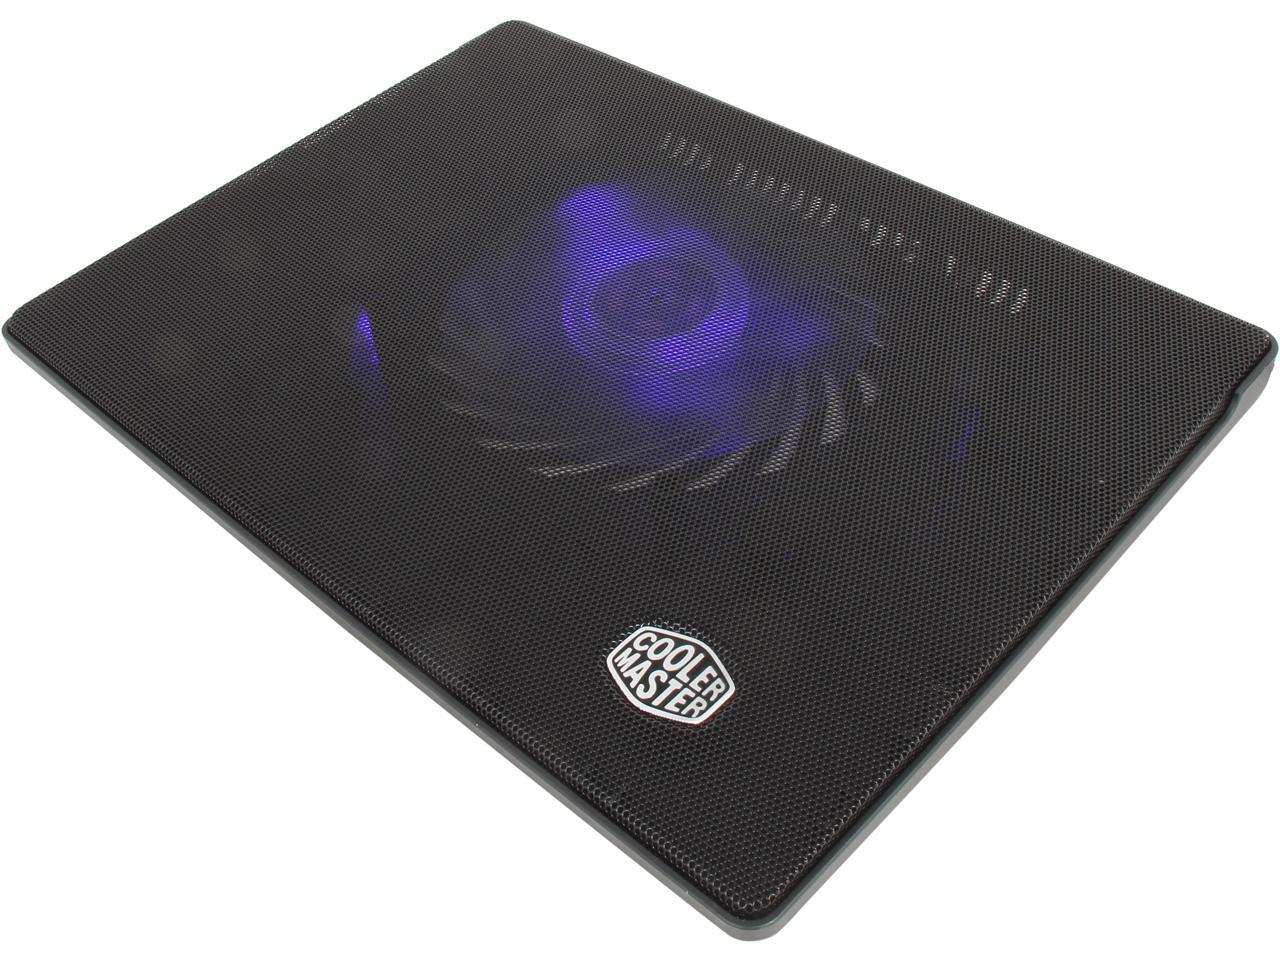 cooler-master-laptop-cooler-notepal-i300-newegg